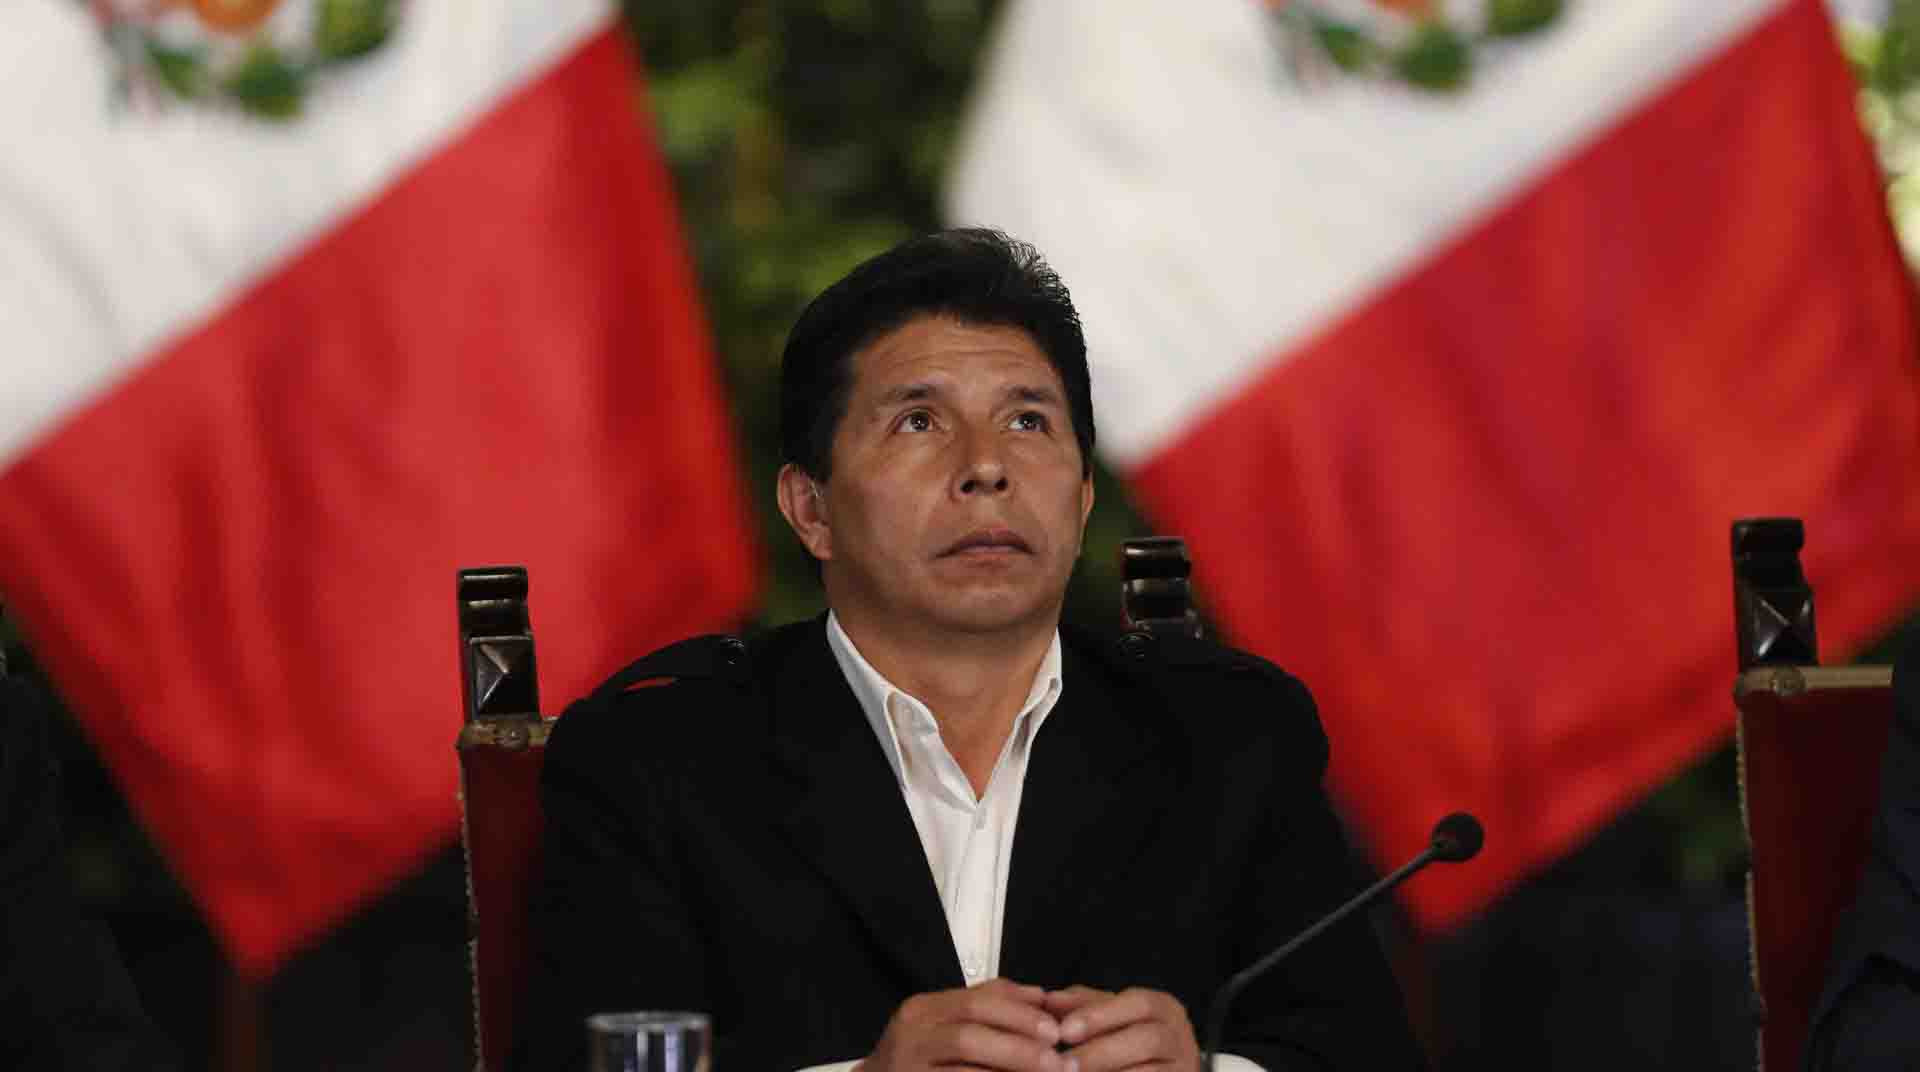 El presidente de Perú dicta la disolución del Congreso e instaura un Gobierno de emergencia. Foto: EFE